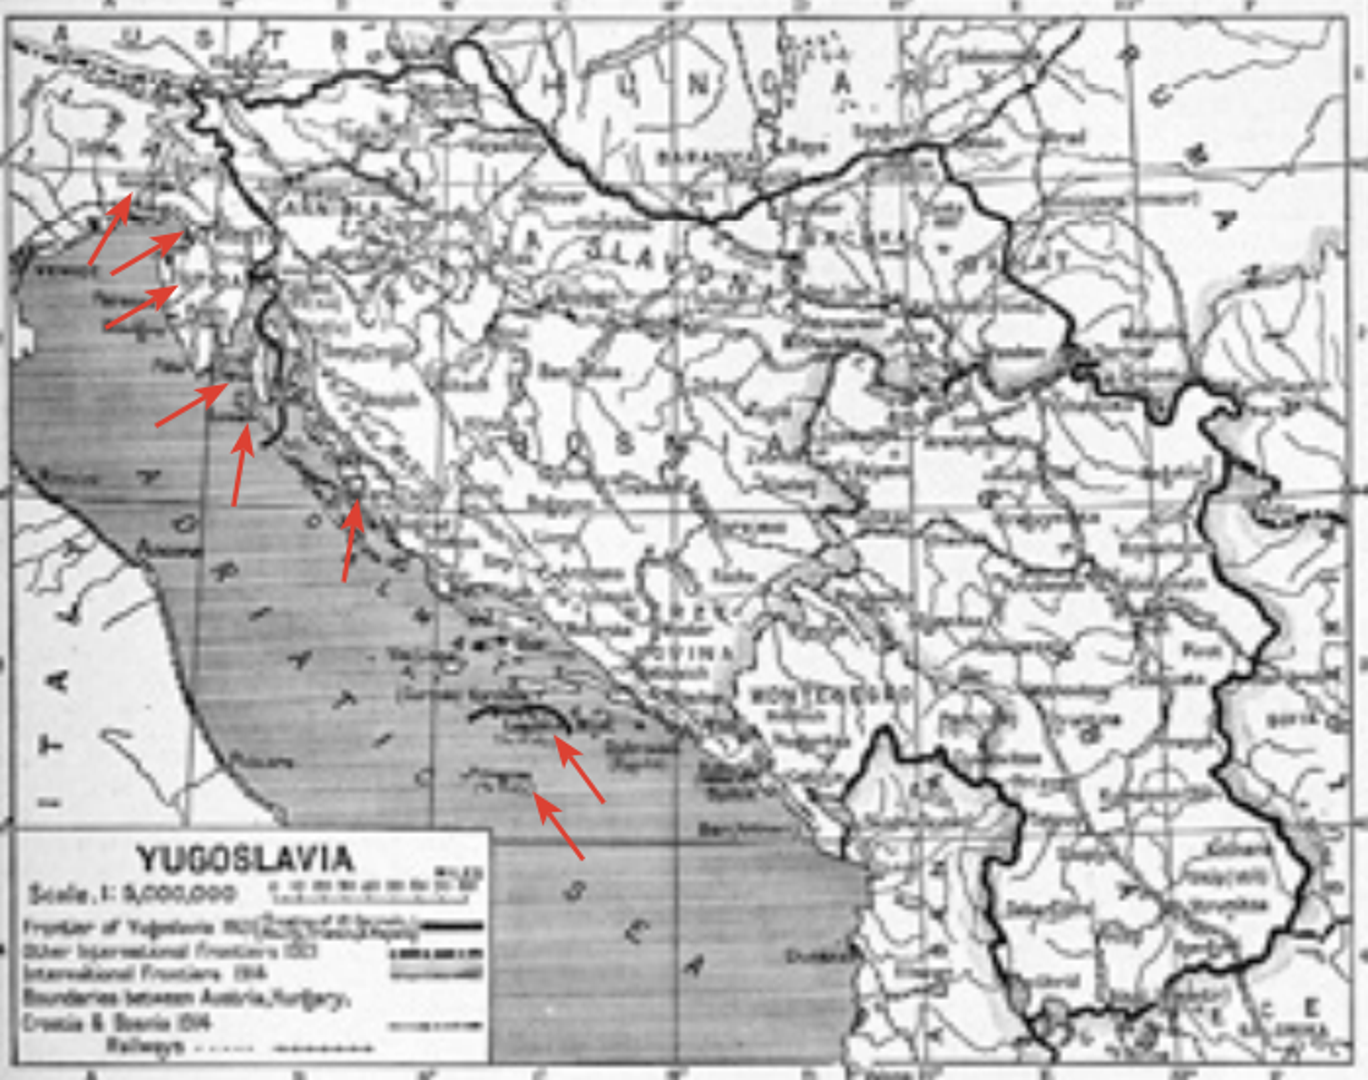 Italija je Rapallskim ugovorom iz 1920. dobila Trst, Goricu,
Gradišku i dio Kranjske, Istru (osim dijela općine Kastav),
Zadar te otoke Cres, Lošinj, Lastovo i Palagruža, a njime je
ustanovljena i Slobodna Država Rijeka